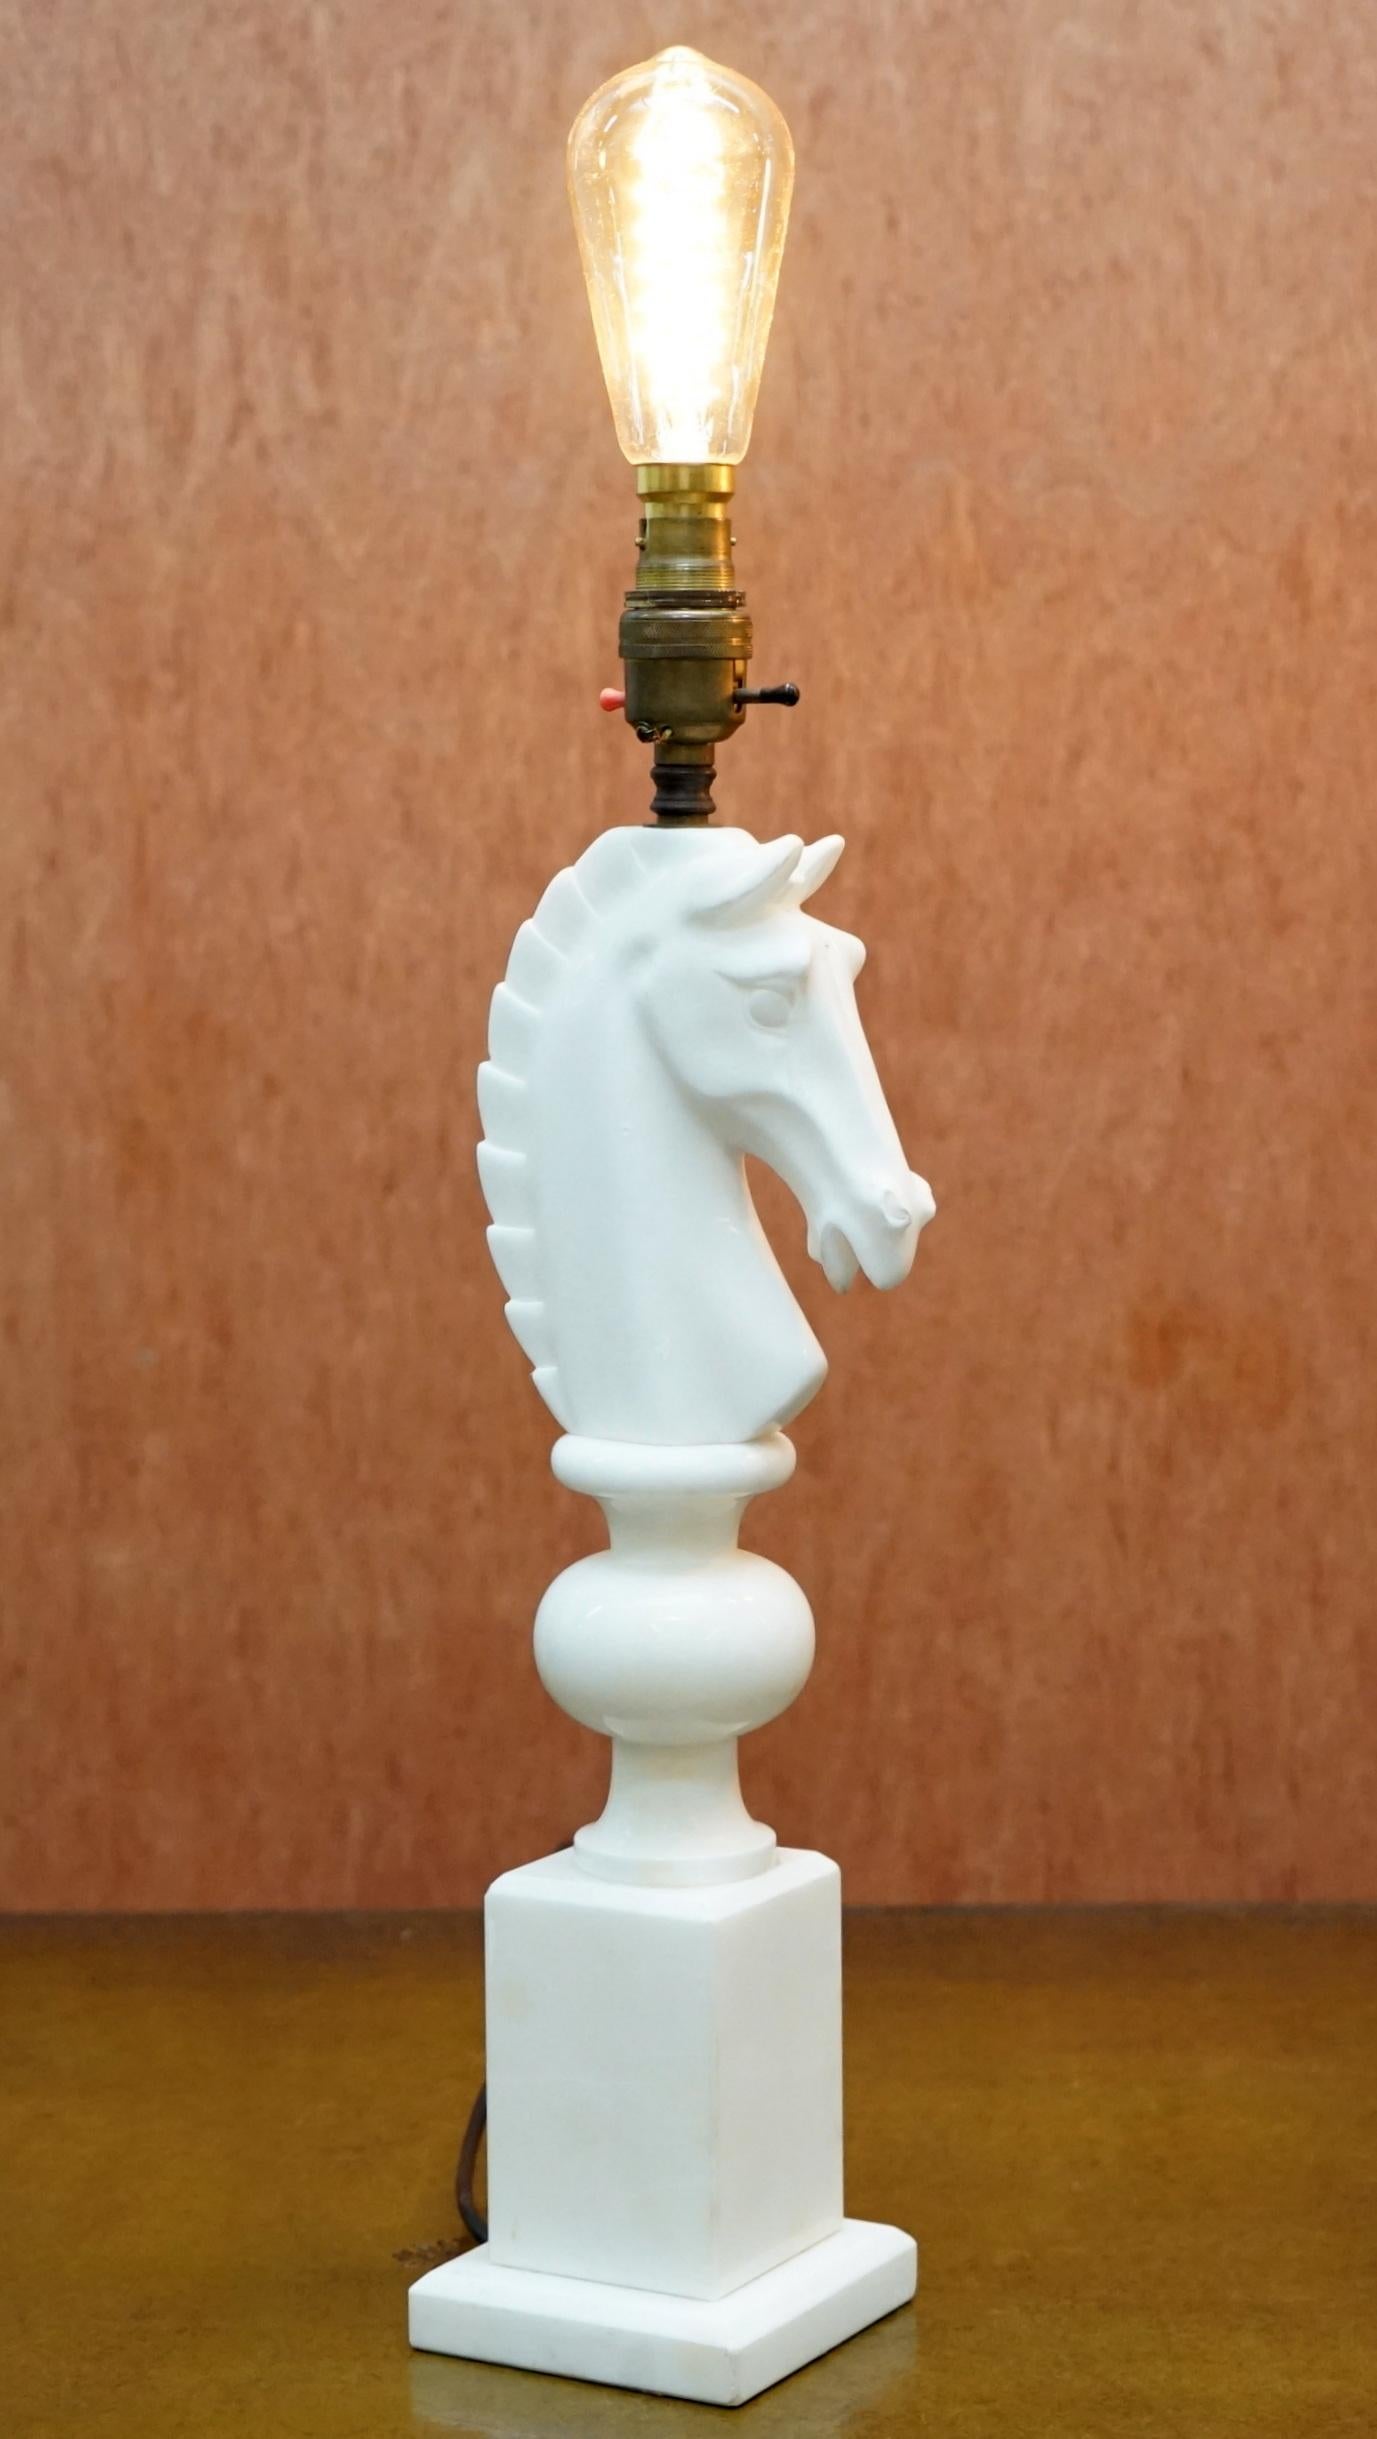 Wir freuen uns, dieses atemberaubende Paar original italienischer Carrara-Marmor-Schachfiguren-Pferde-Ritter-Lampen zum Verkauf anzubieten

Sie sind in absolut atemberaubendem Zustand, vollständig gewartet und mit neuer Verkabelung, sie sind